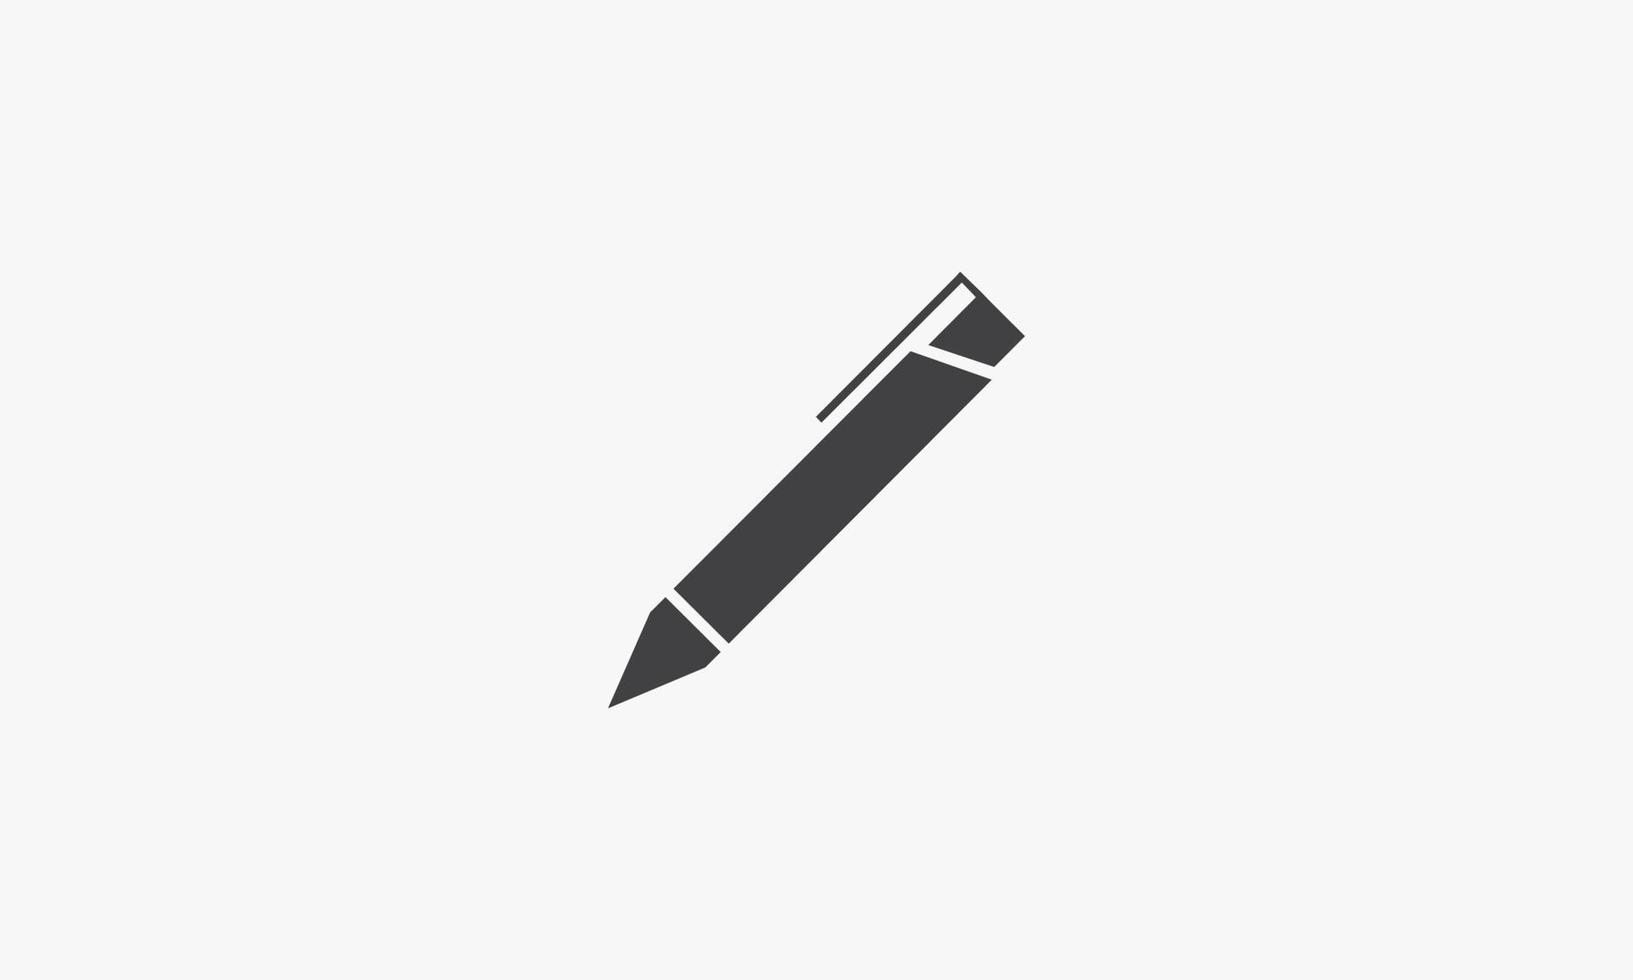 penna illustrazione vettoriale su sfondo bianco. icona creativa.